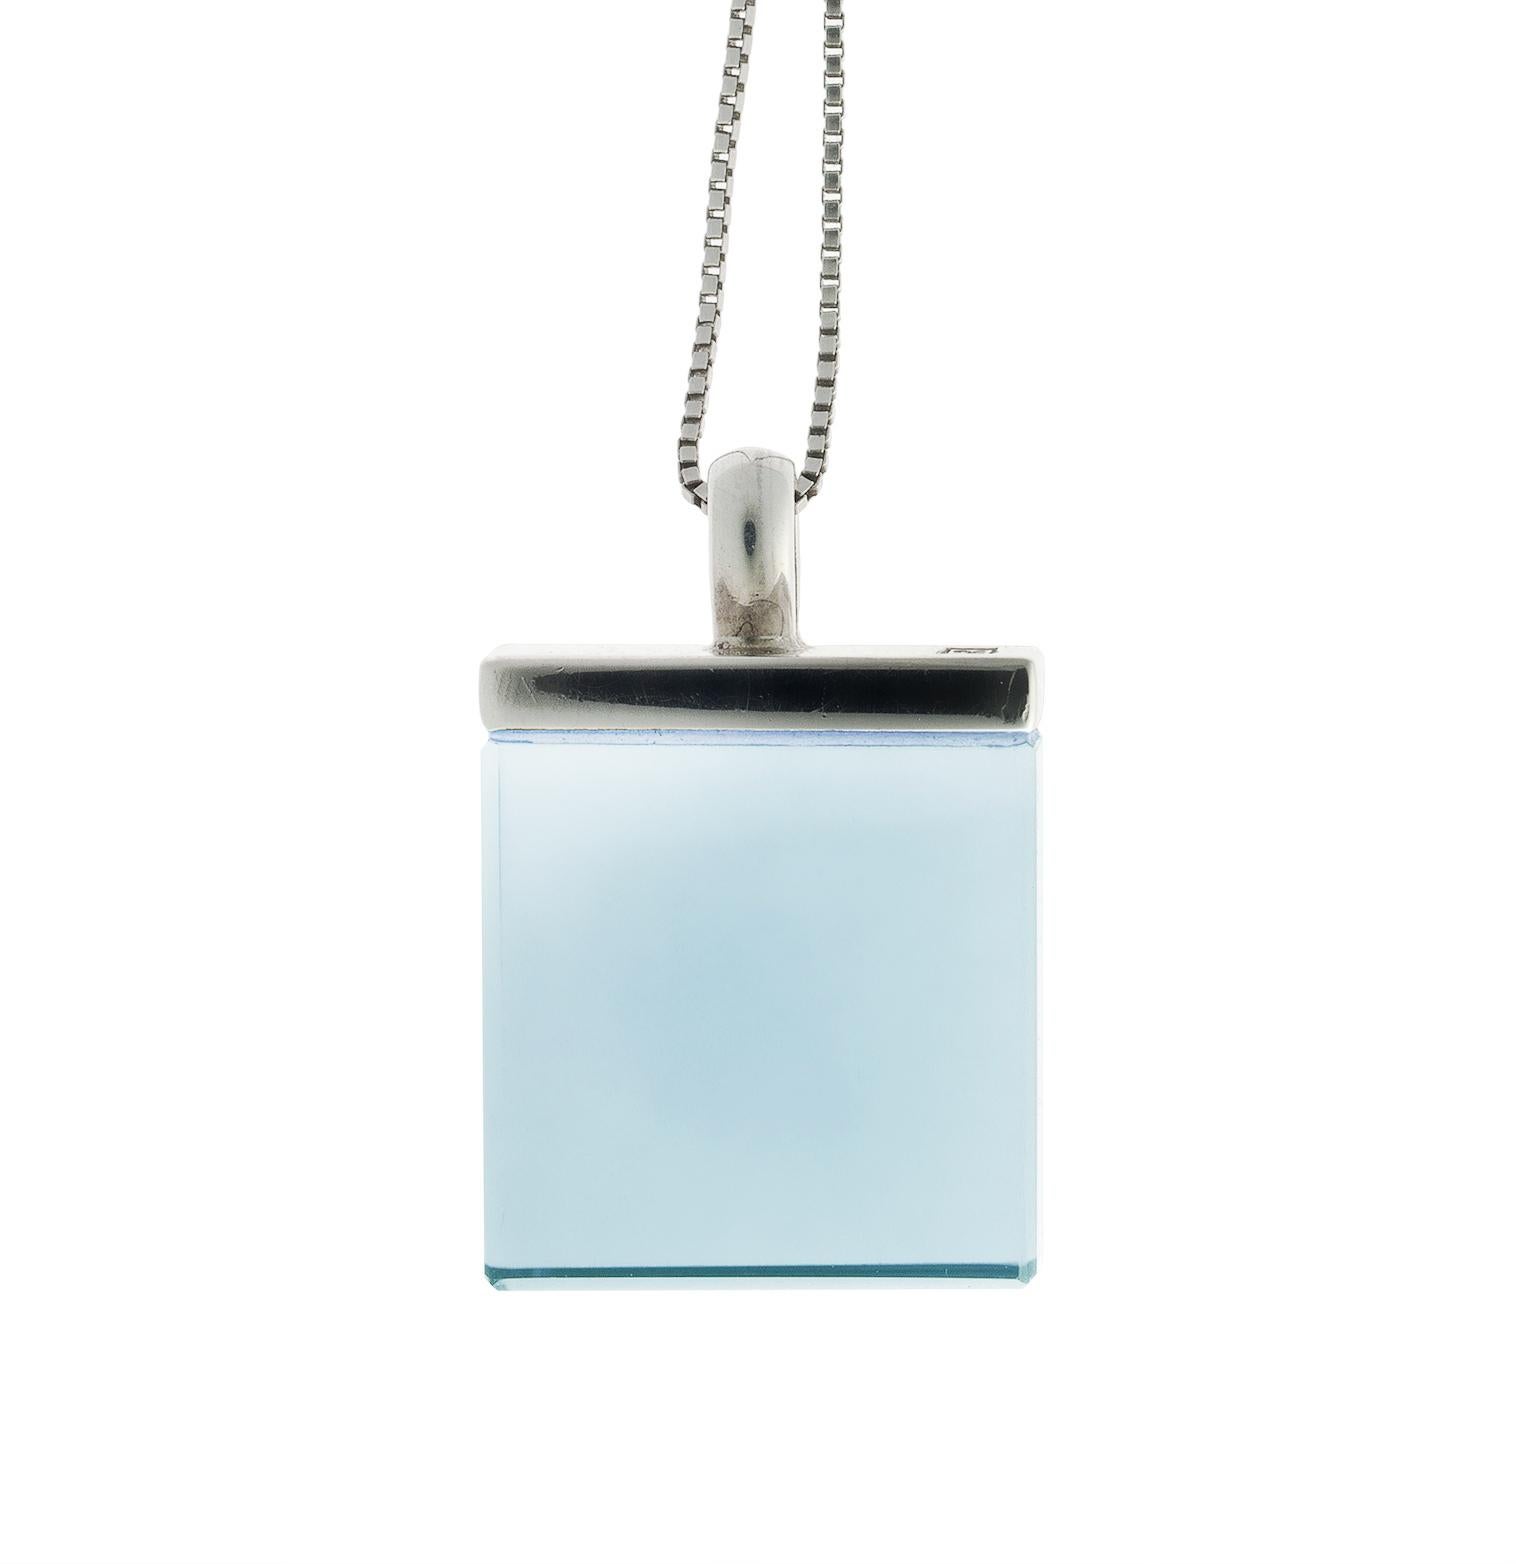 Voici une version révisée de votre texte, dont la grammaire et la fluidité ont été améliorées :

Ce collier pendentif de créateur de style Art déco présente un quartz bleu de 15x15x8 mm et est réalisé en or blanc 18 carats. Il appartient à la